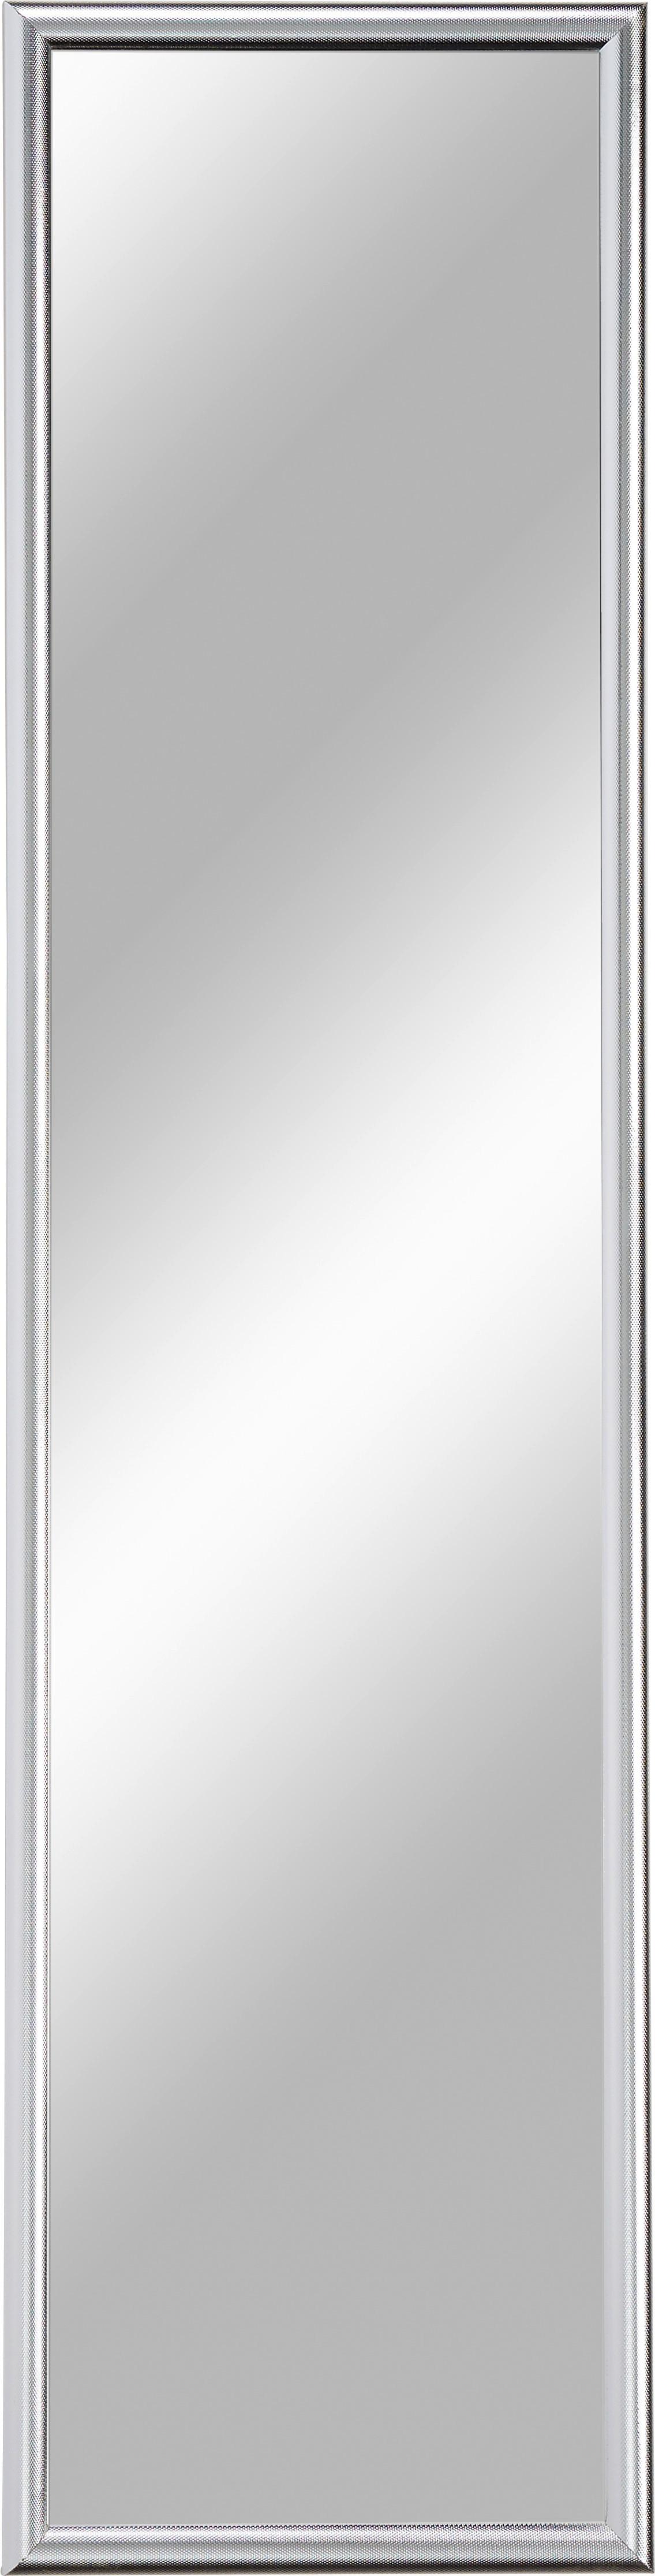 Nástěnné Zrcadlo Fumo - barvy stříbra, Moderní, sklo (40/160cm)